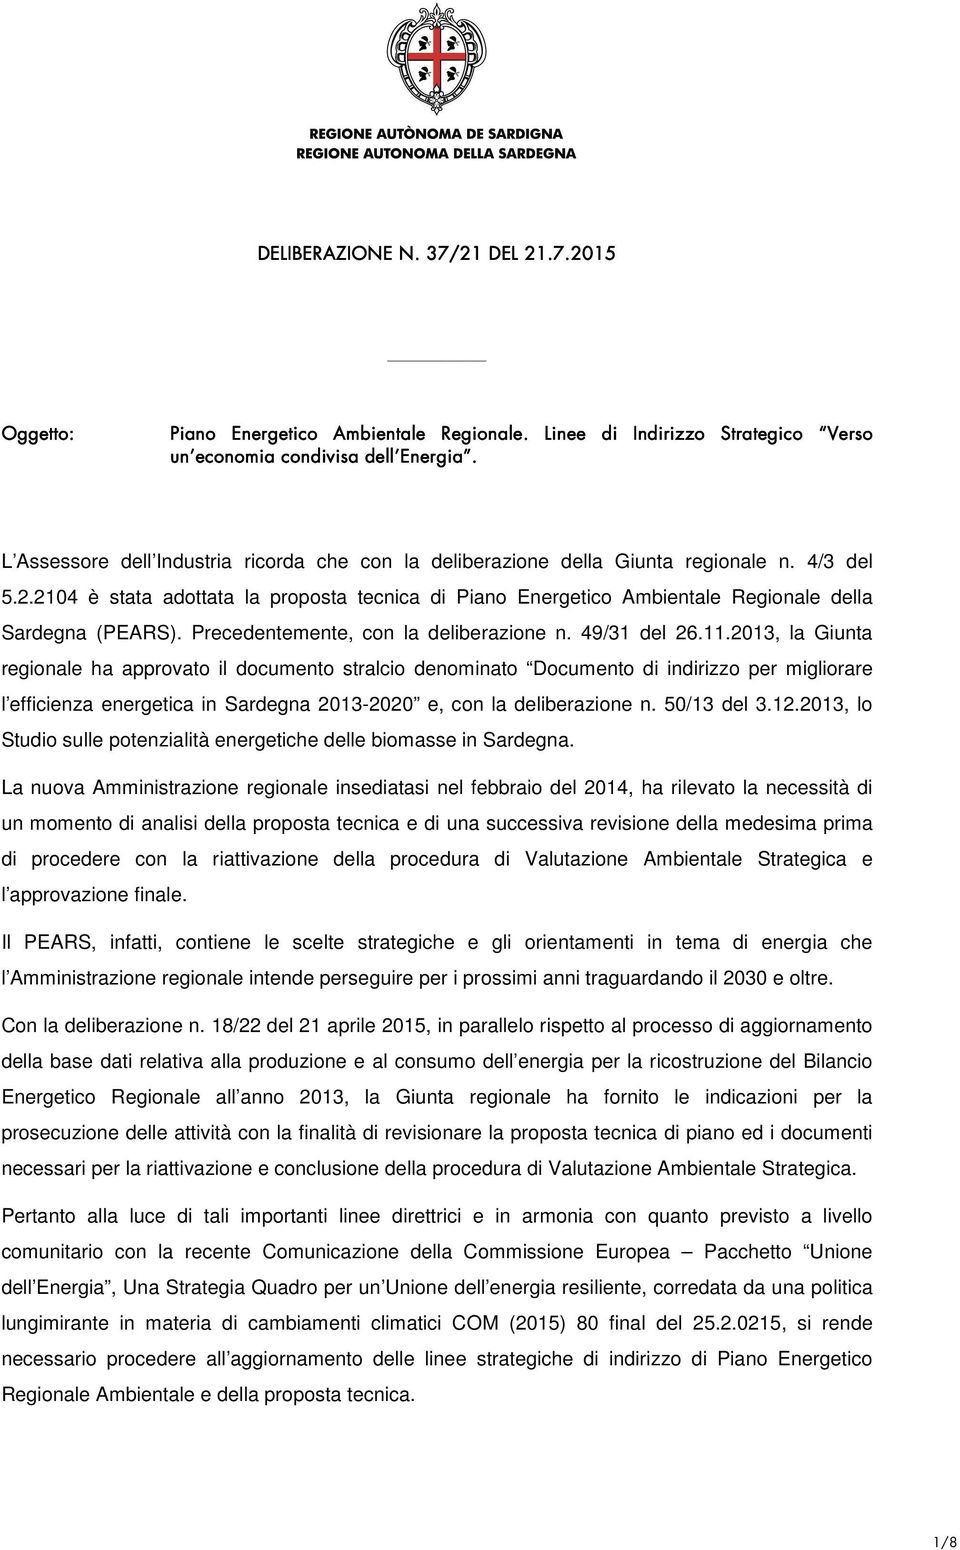 2104 è stata adottata la proposta tecnica di Piano Energetico Ambientale Regionale della Sardegna (PEARS). Precedentemente, con la deliberazione n. 49/31 del 26.11.